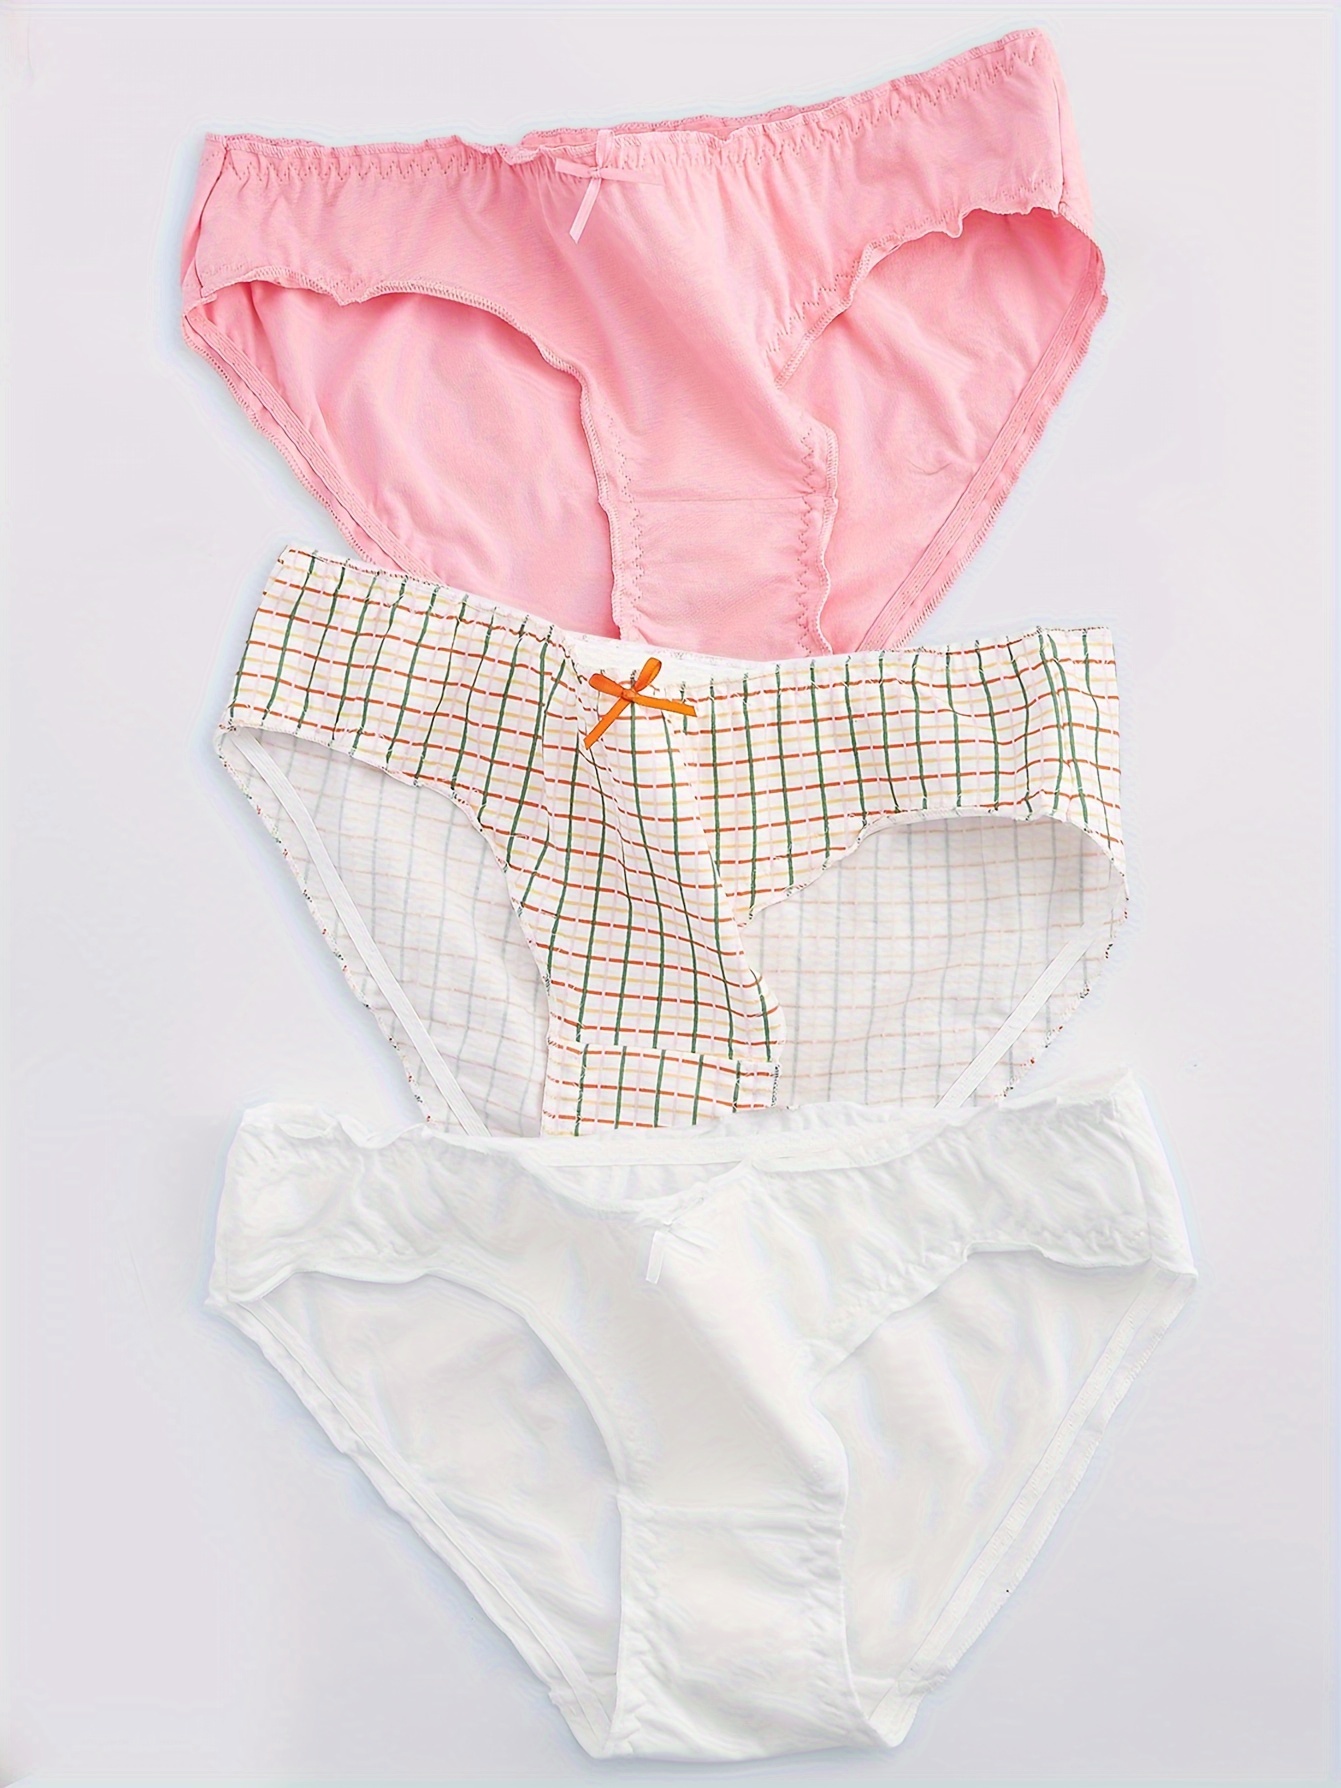 Korean Girls Panties Antimicrobial Simple Cotton Plaid Women's Panties  Breathable Underwear Cute Low Waist Panties Thongs